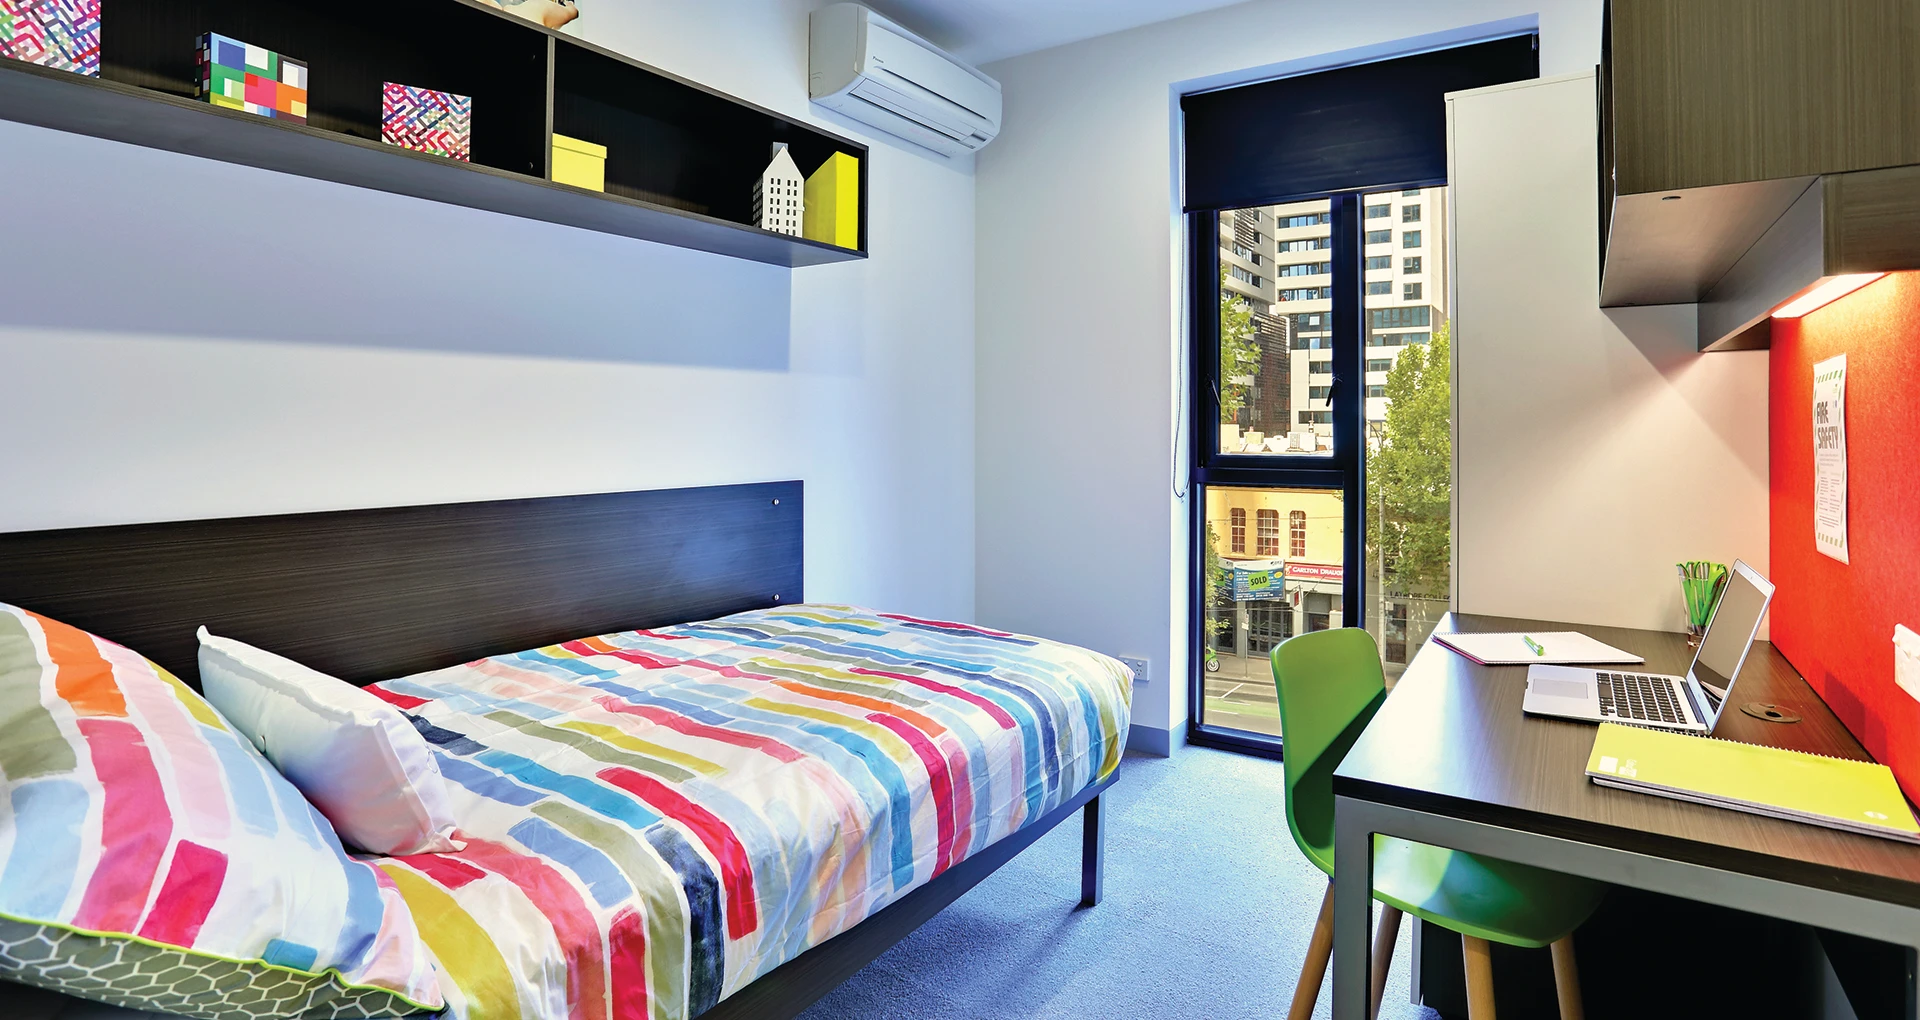 Habitación compartida con otro estudiante en Melbourne